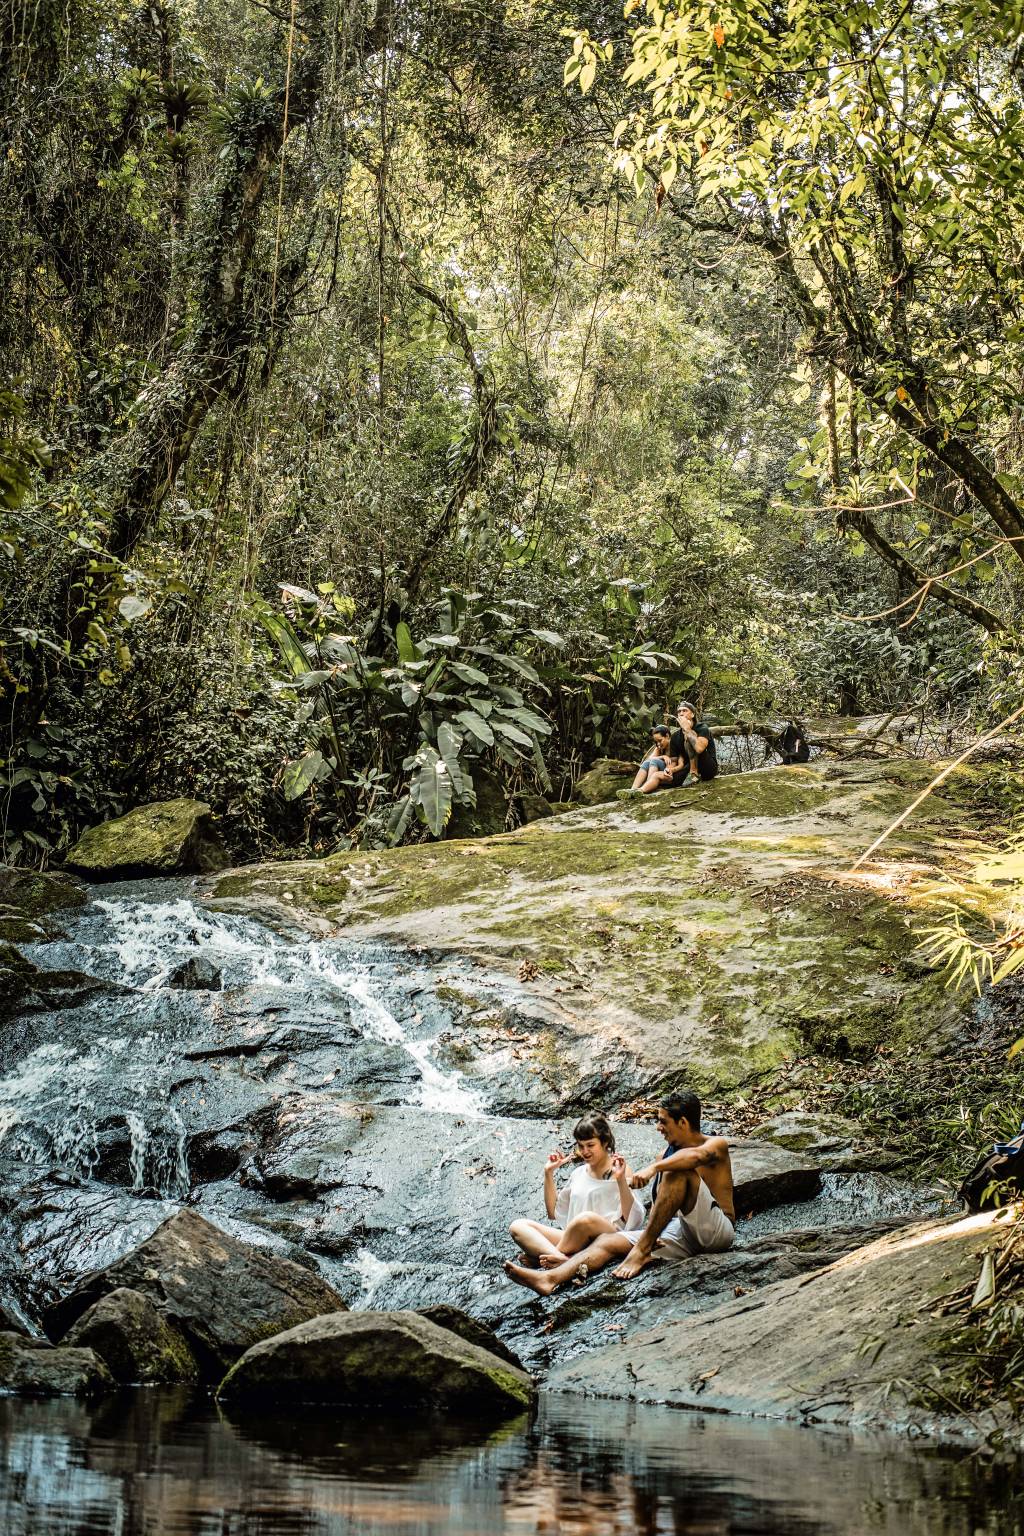 A imagem mostra um rio no Parque Estadual da Cantareira